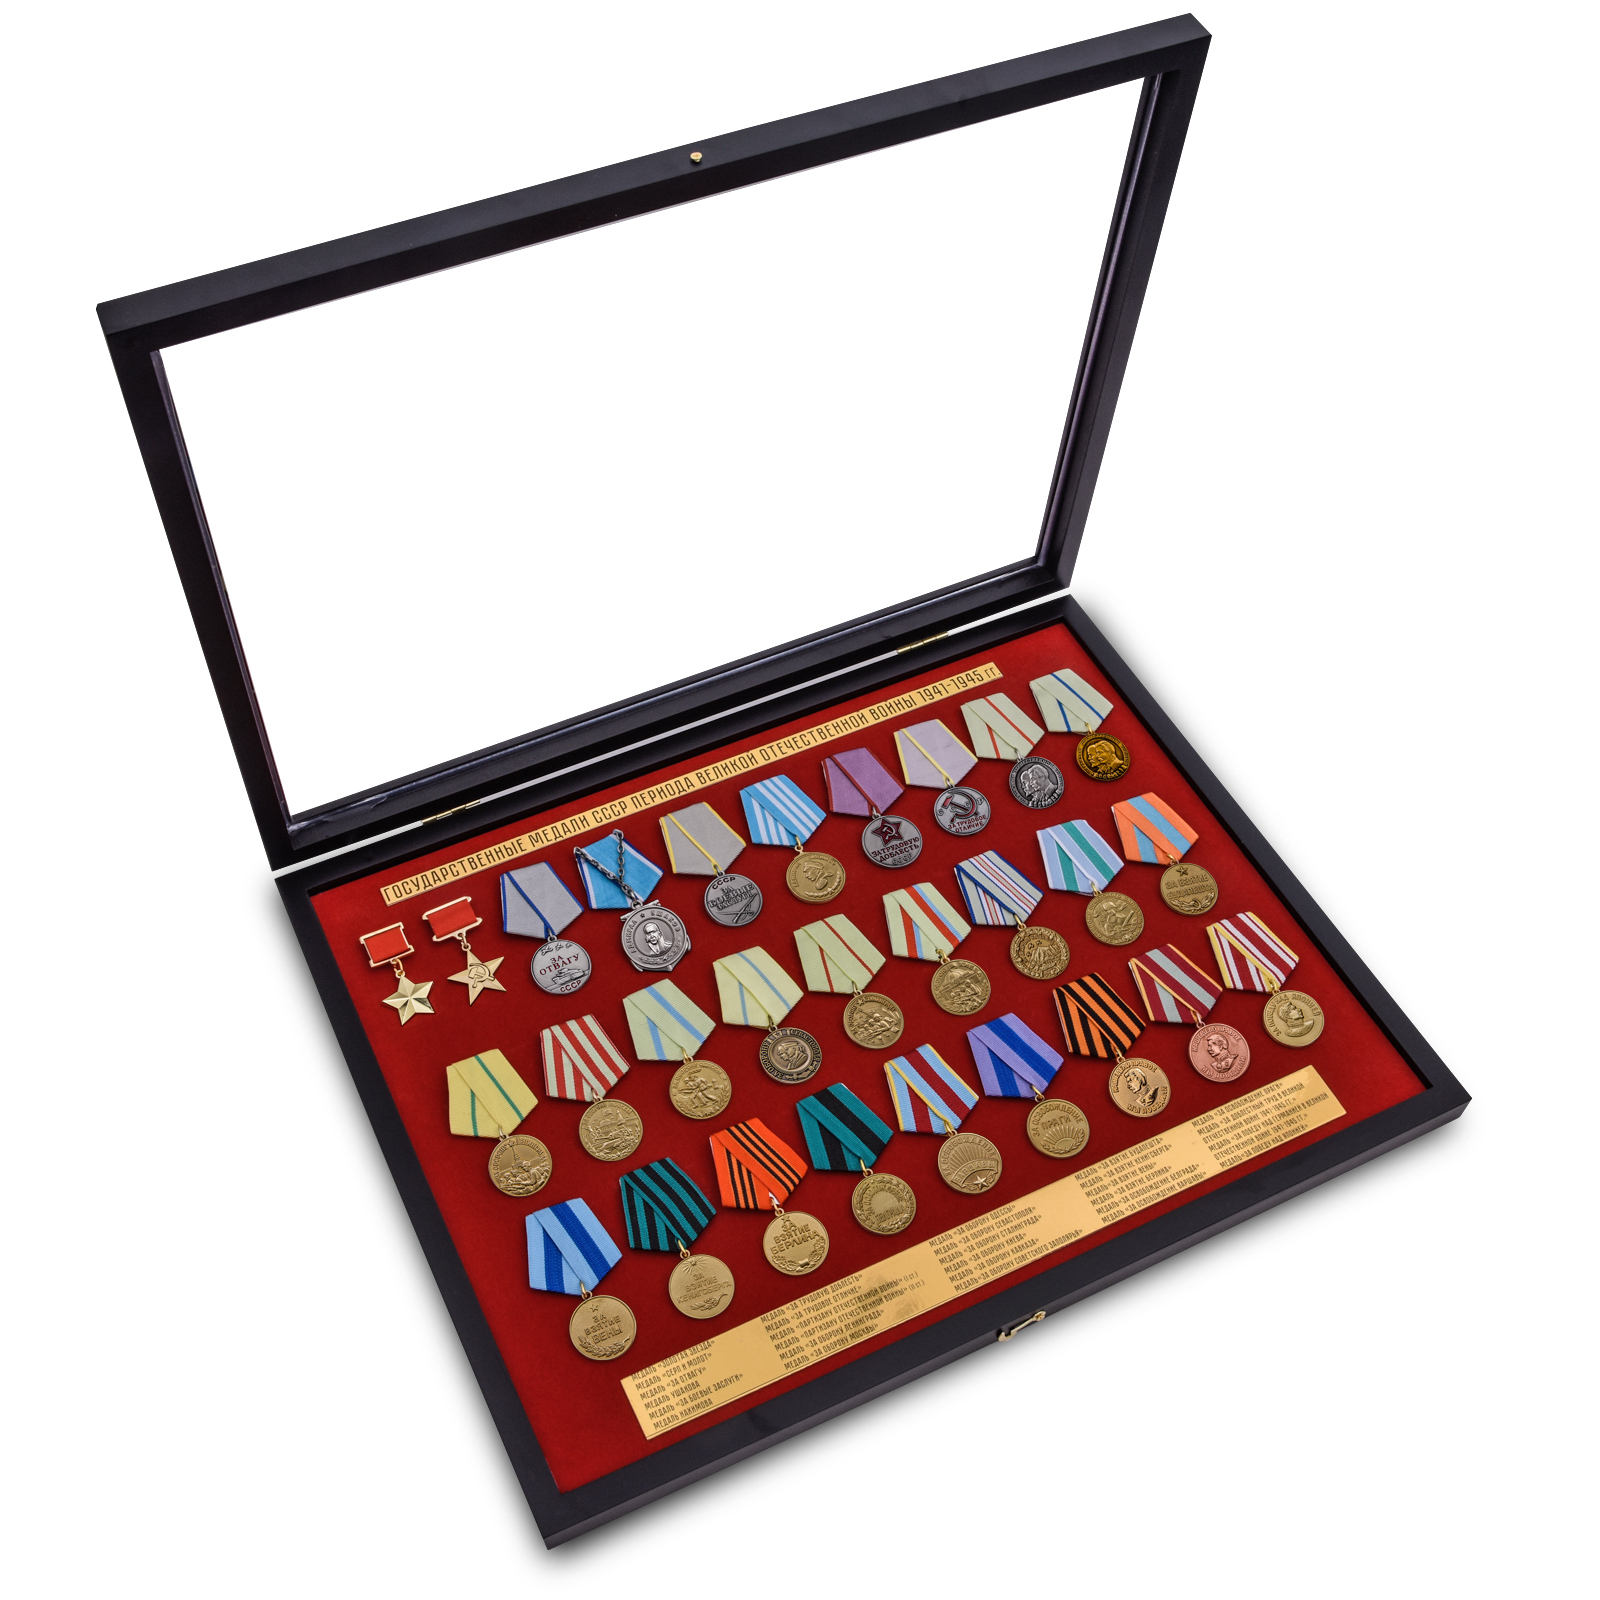 Планшет имеет размер 52,0x40,0 см, поверхность внутренней части – бархатистая, бордового цвета, с ячейками под медали и табличкой с перечнем входящих в набор наград. 